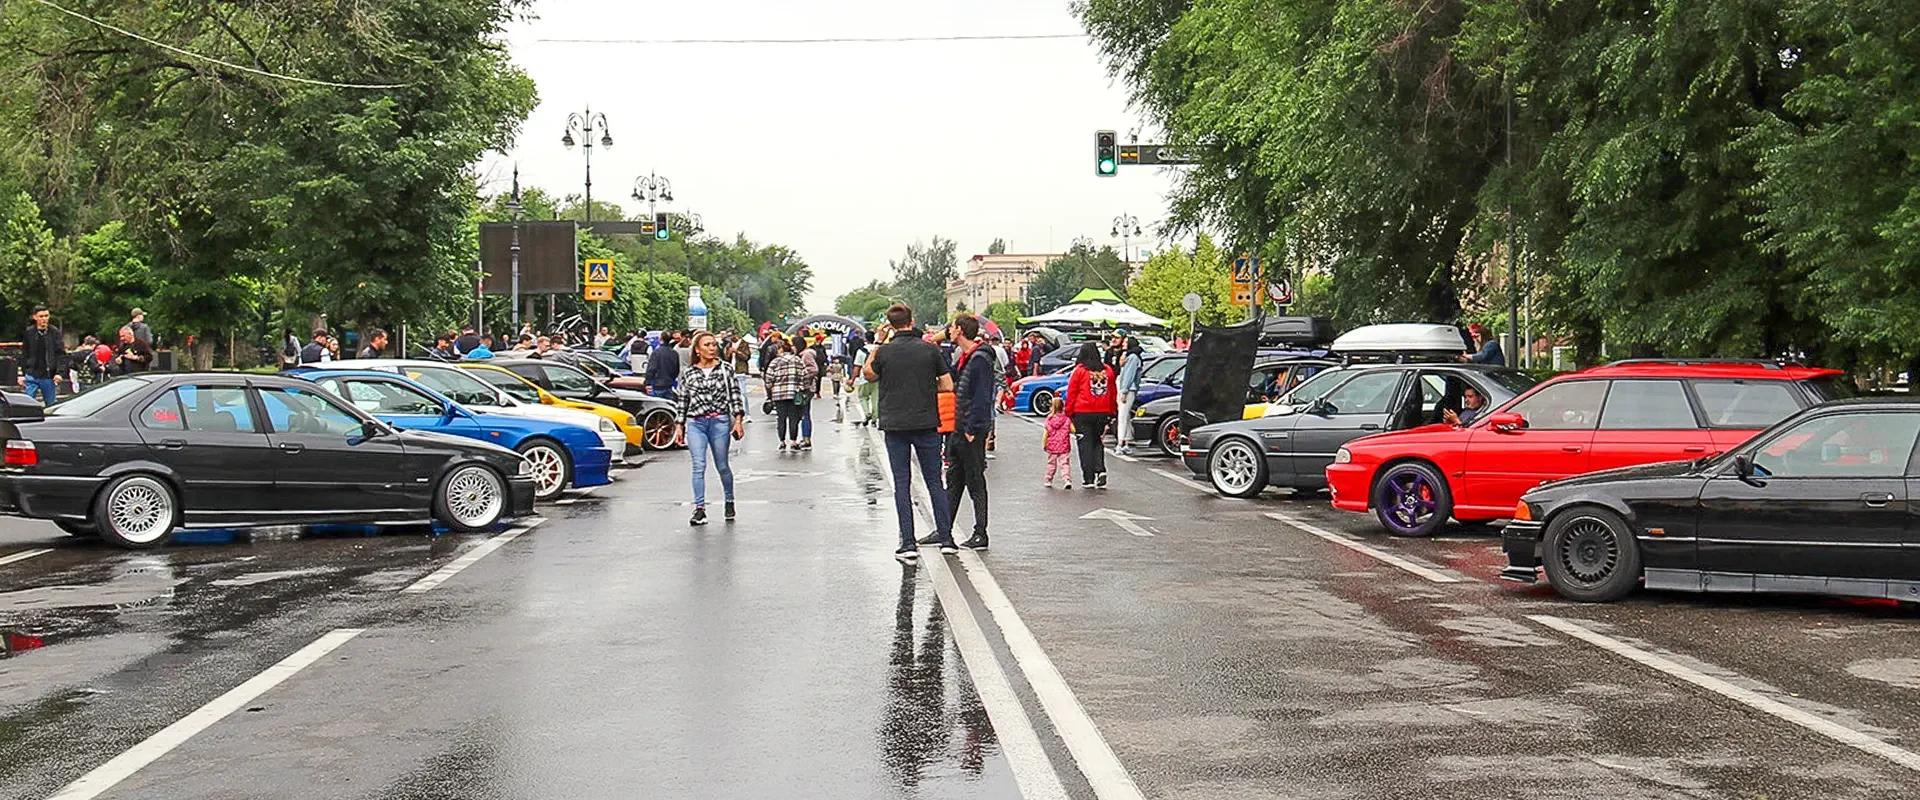 Фестиваль тюнинга и автозвука в Алматы